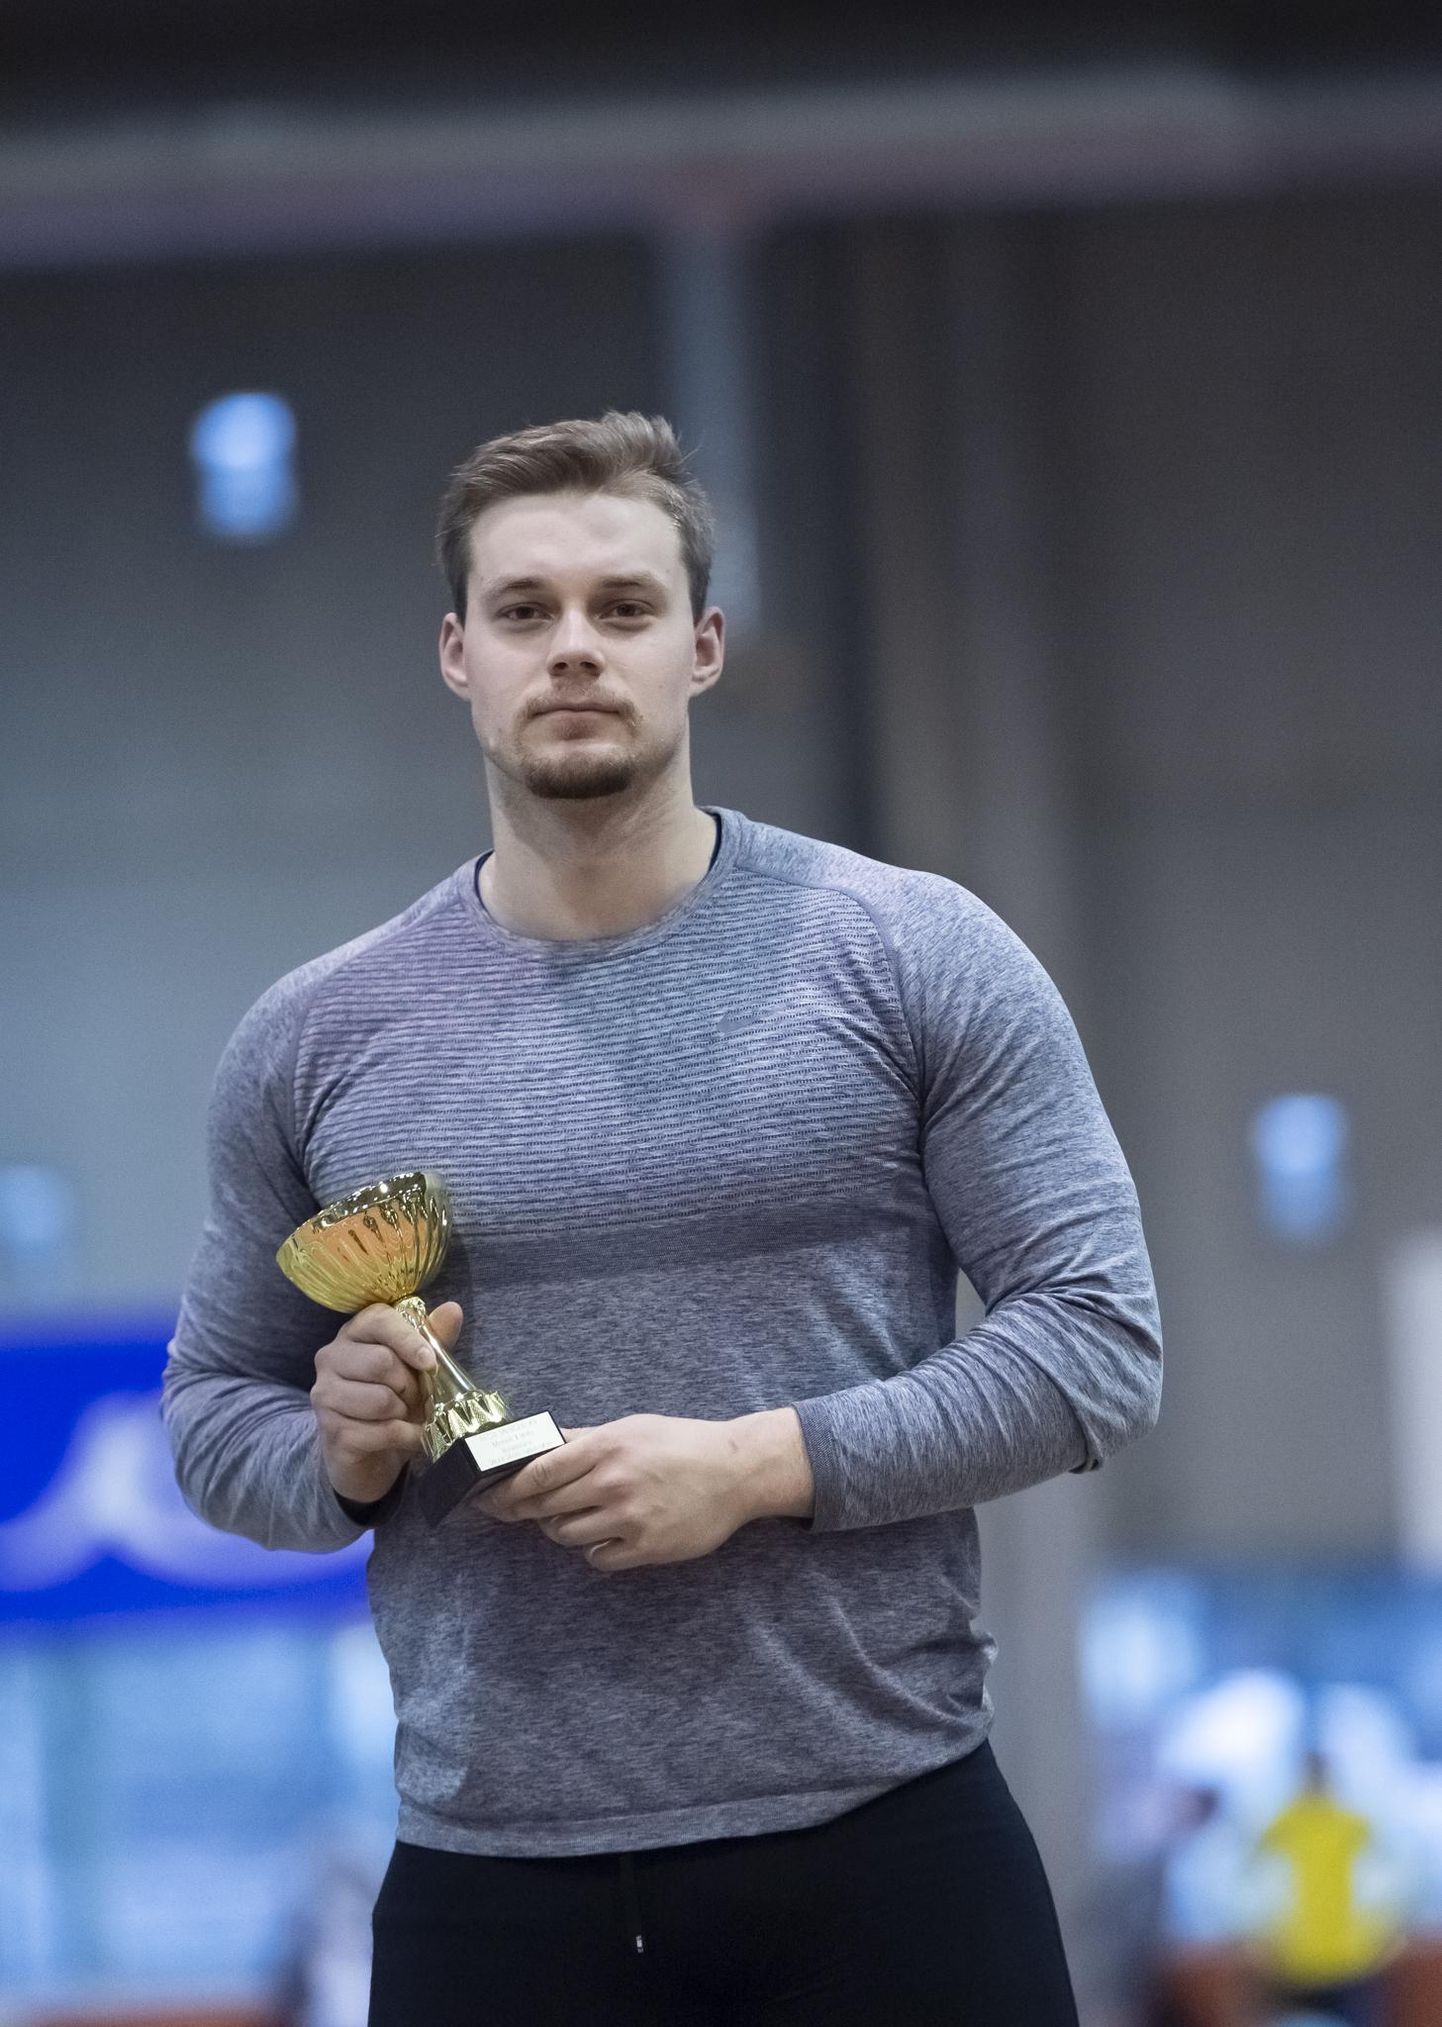 Kaks nädalat tagasi teenis Jander Heil Eesti talvistel karikavõistlustel meeste kuulitõukes tulemusega 18.97 esikoha, parandades sellega oma eelmist siserekordit.